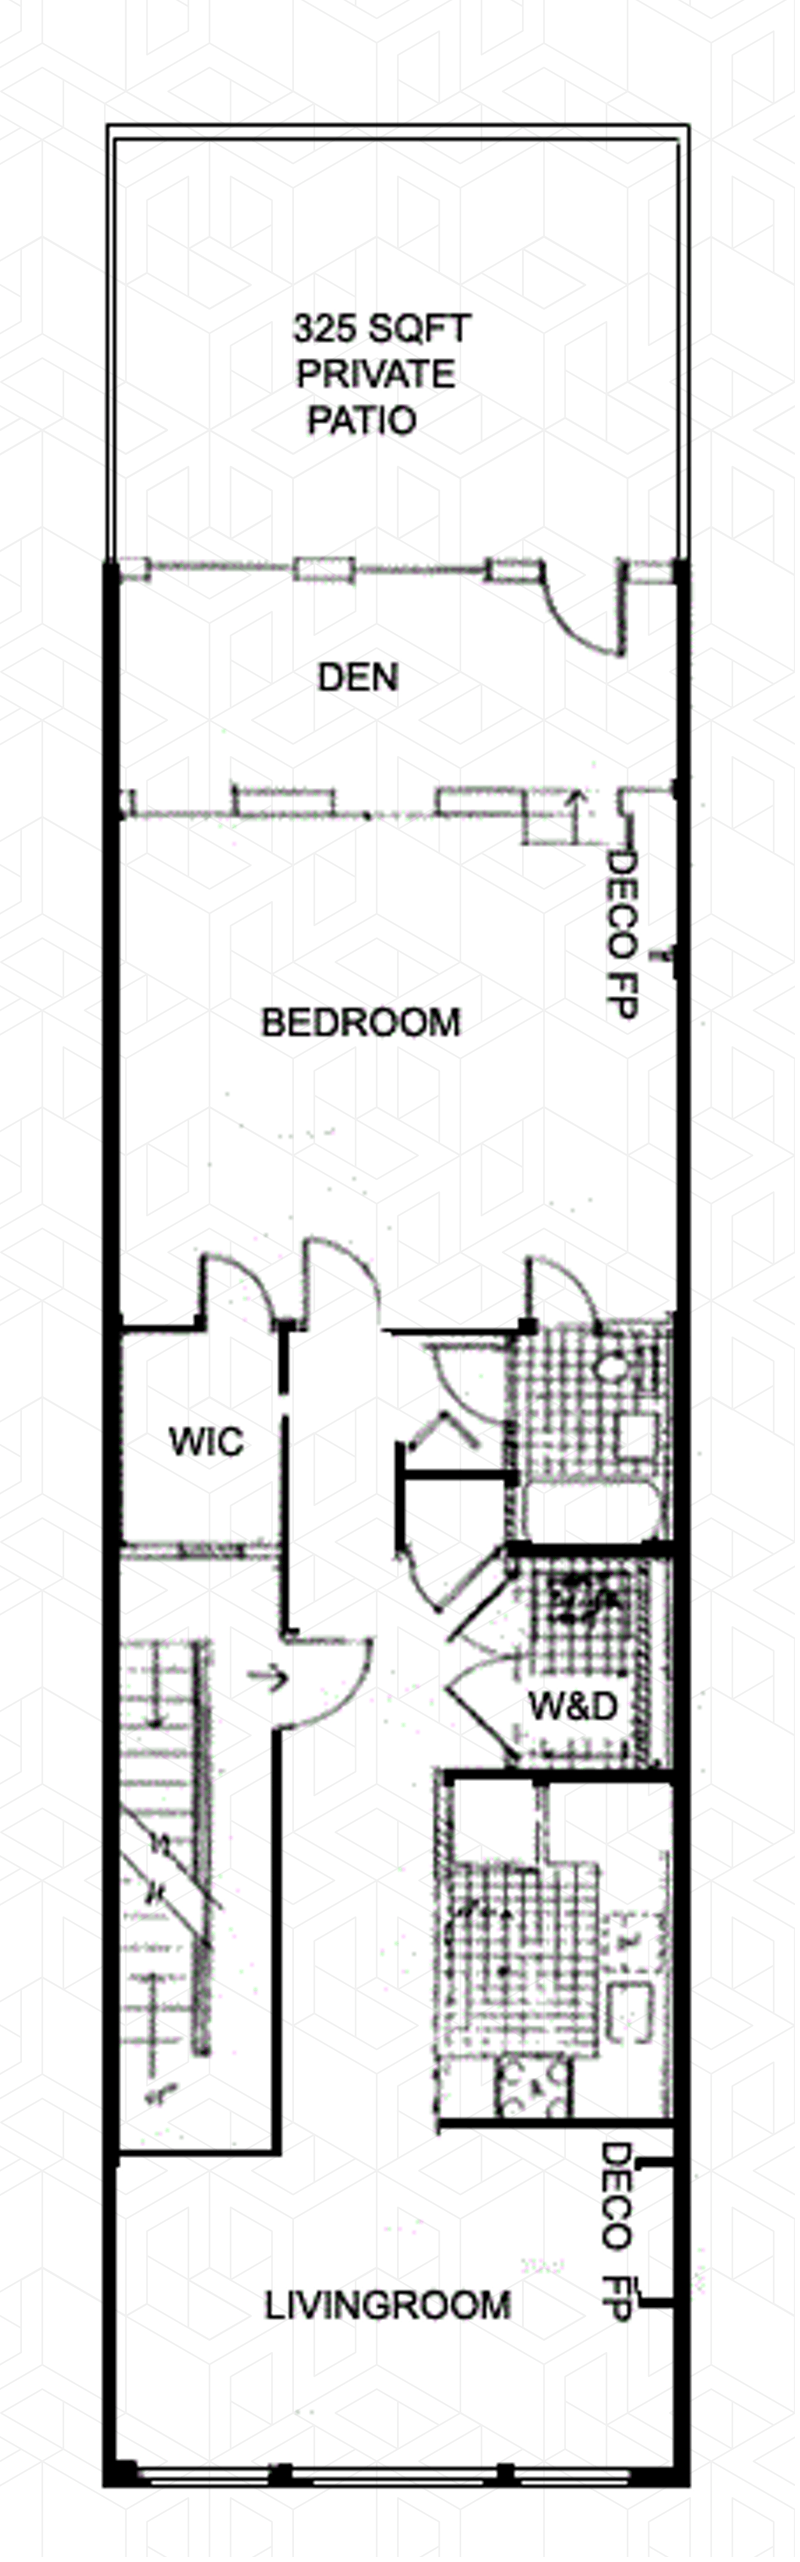 Floorplan for 13 Avenue A 2nd Fl